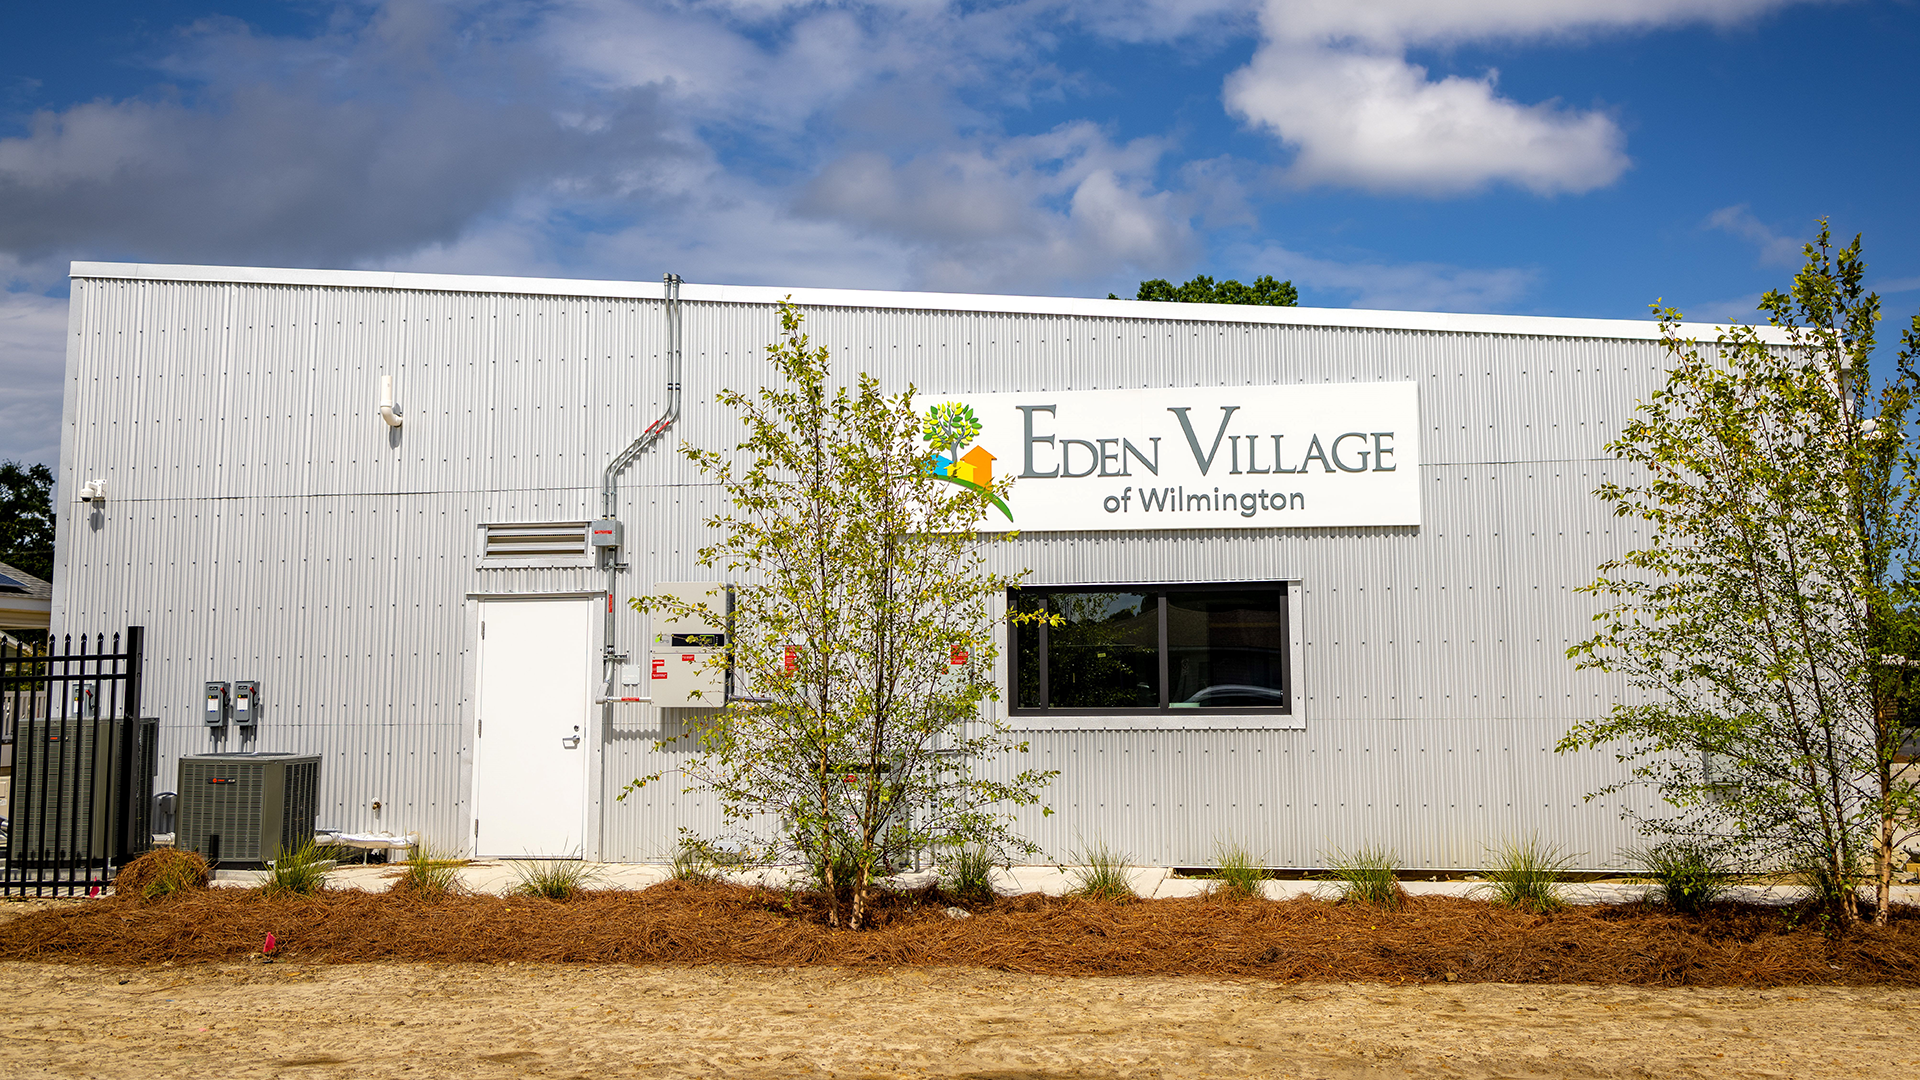 Eden Village of Wilmington: Building Hope